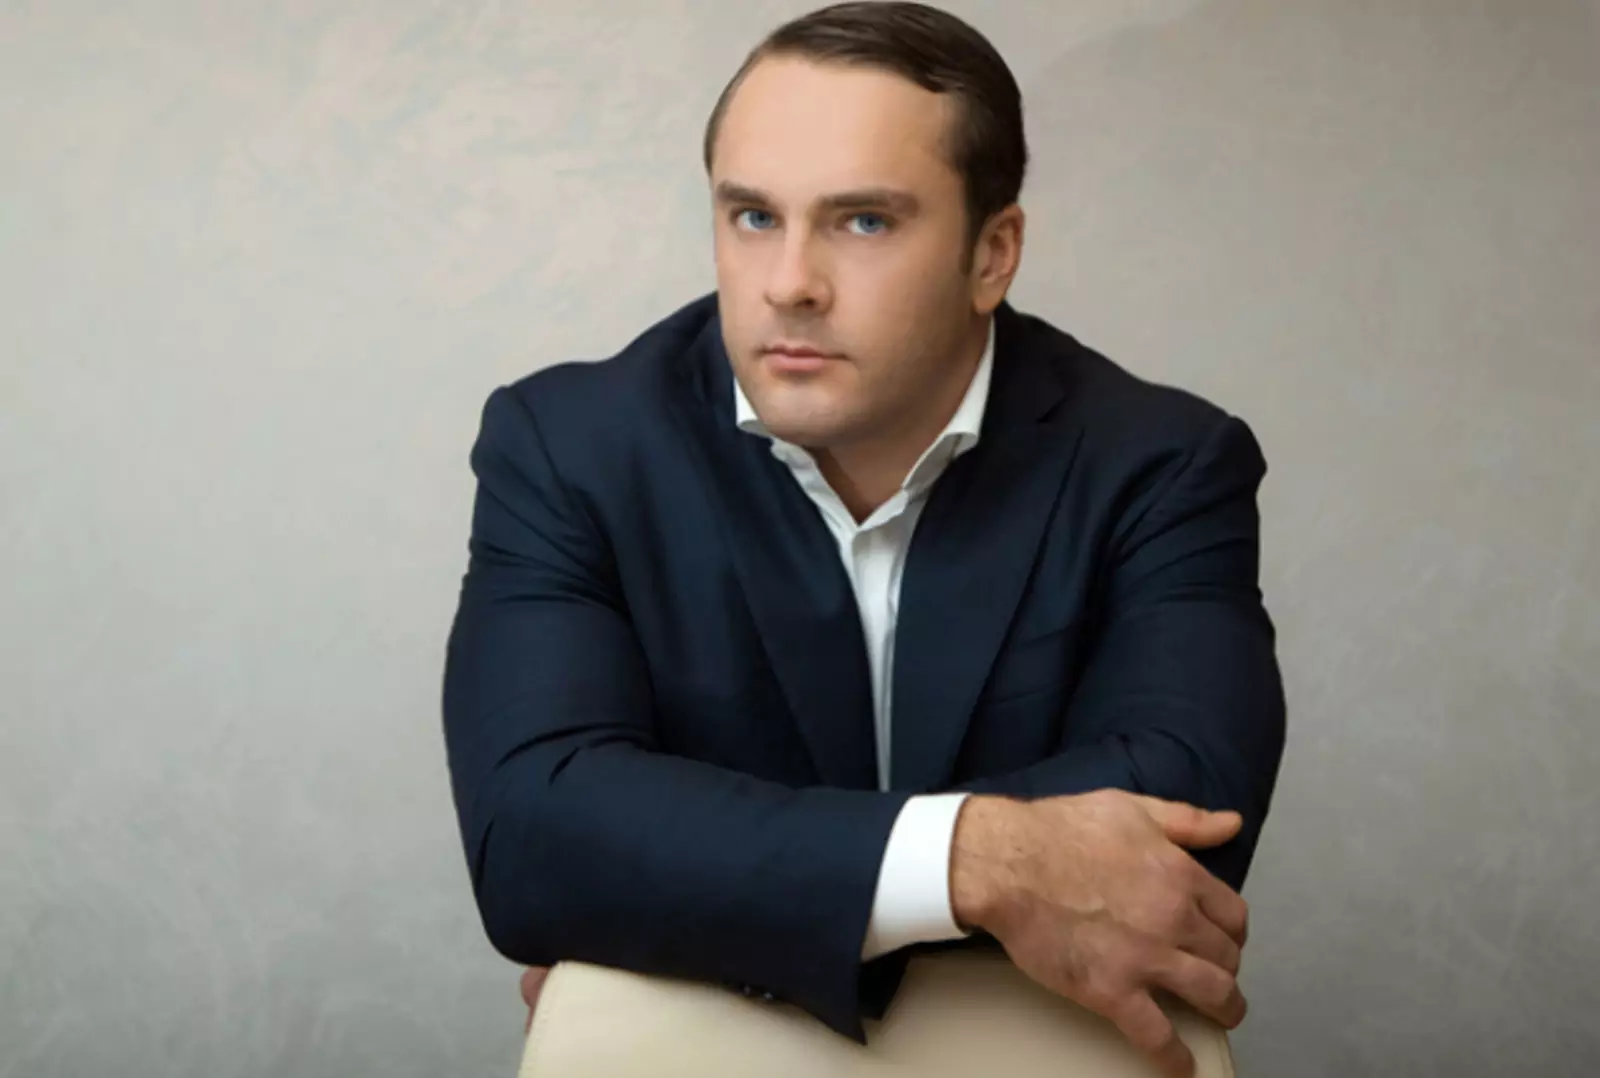 Антон Петров – российский предприниматель и владелец ряда крупных компаний